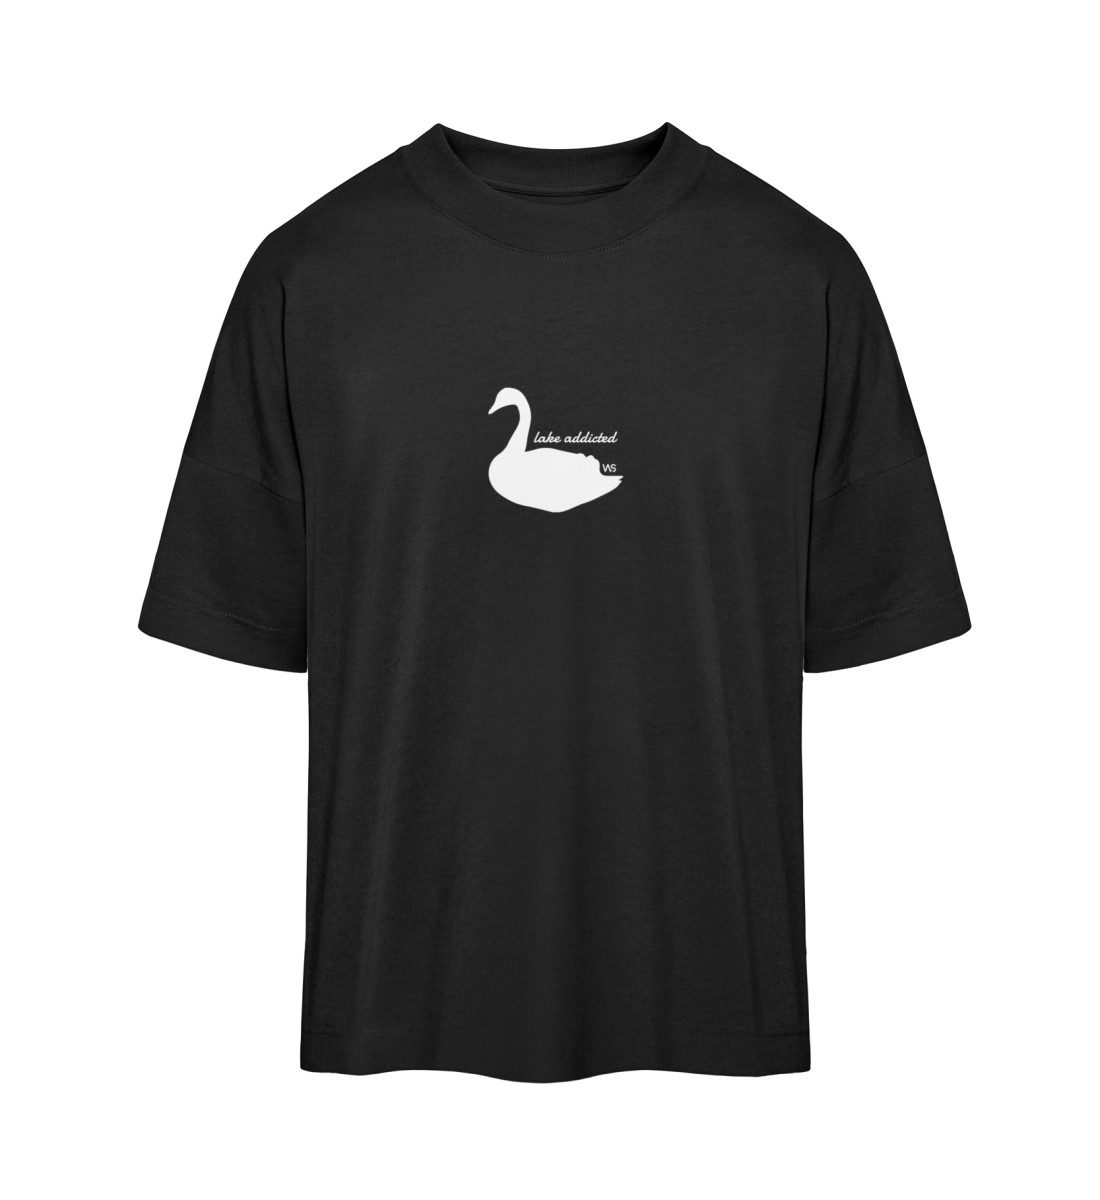 T-shirt Oversize Lake Addicted - Organic Oversized Shirt ST/ST-16